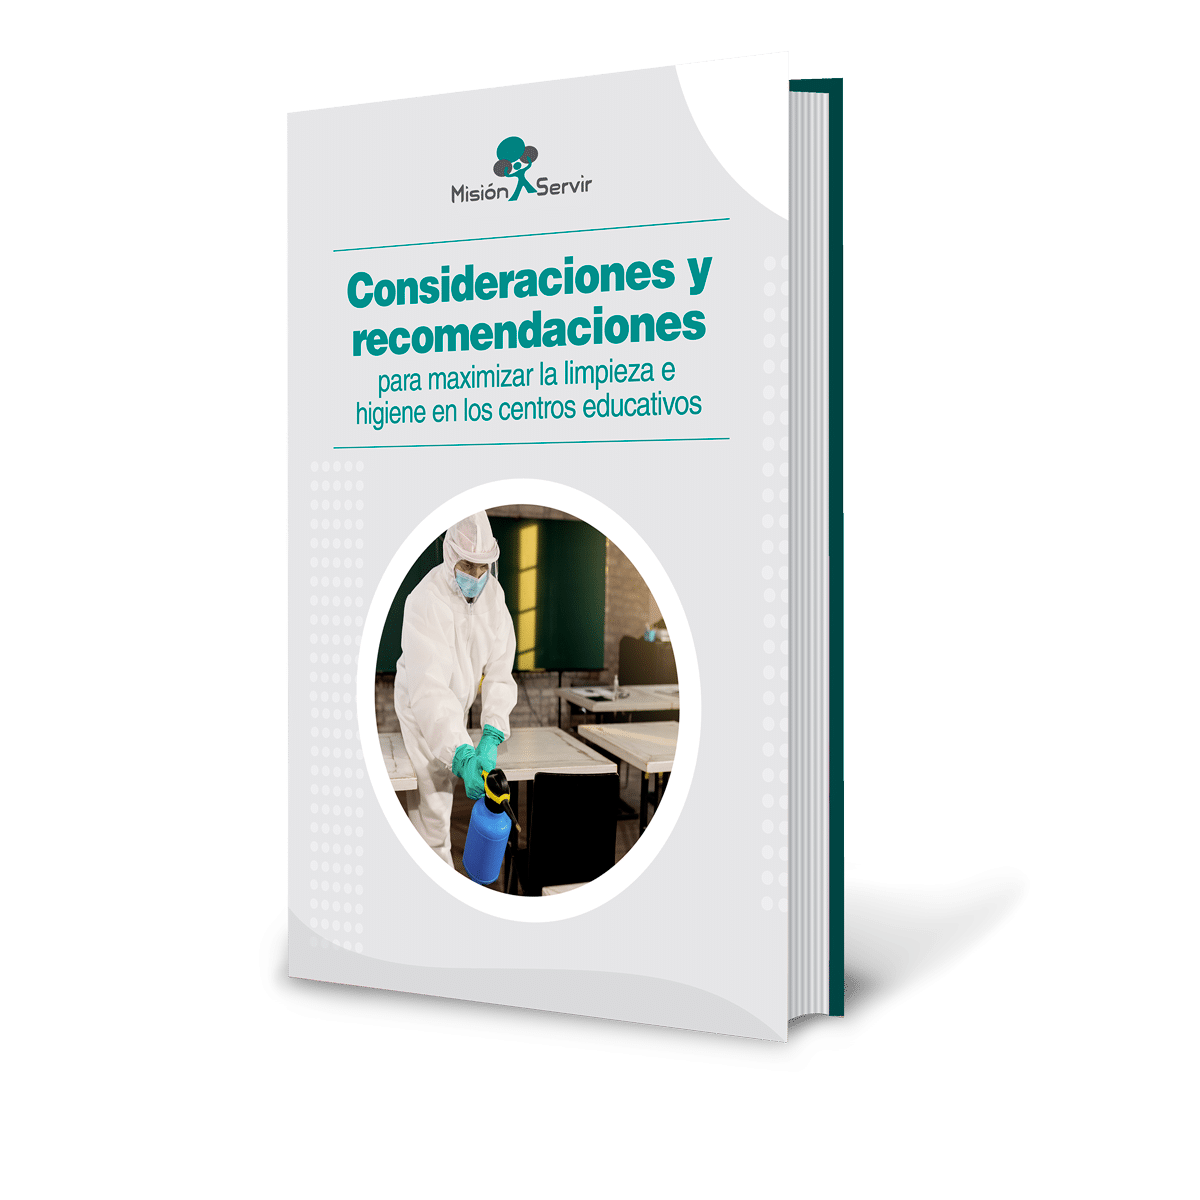 Descarga GRATIS el ebook: Consideraciones y recomendaciones para maximizar la limpieza e higiene en los centros educativos - Misión Servir